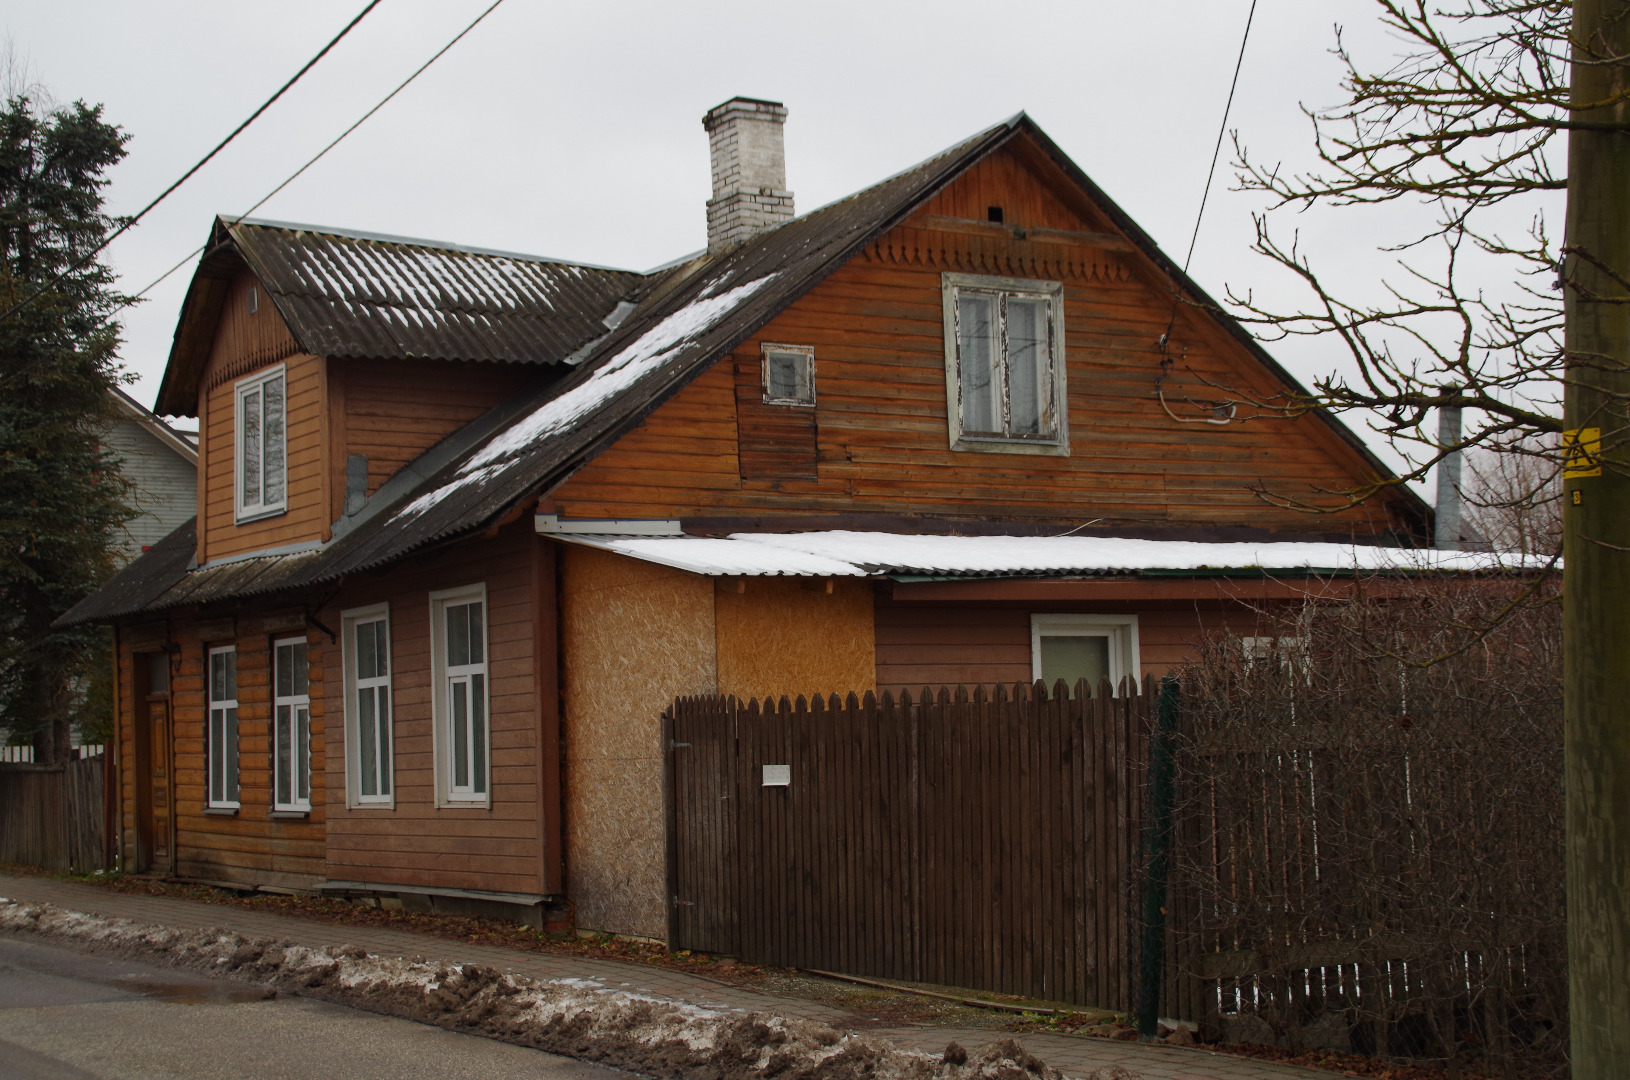 Tartu, Herne 57, built around 1905. rephoto